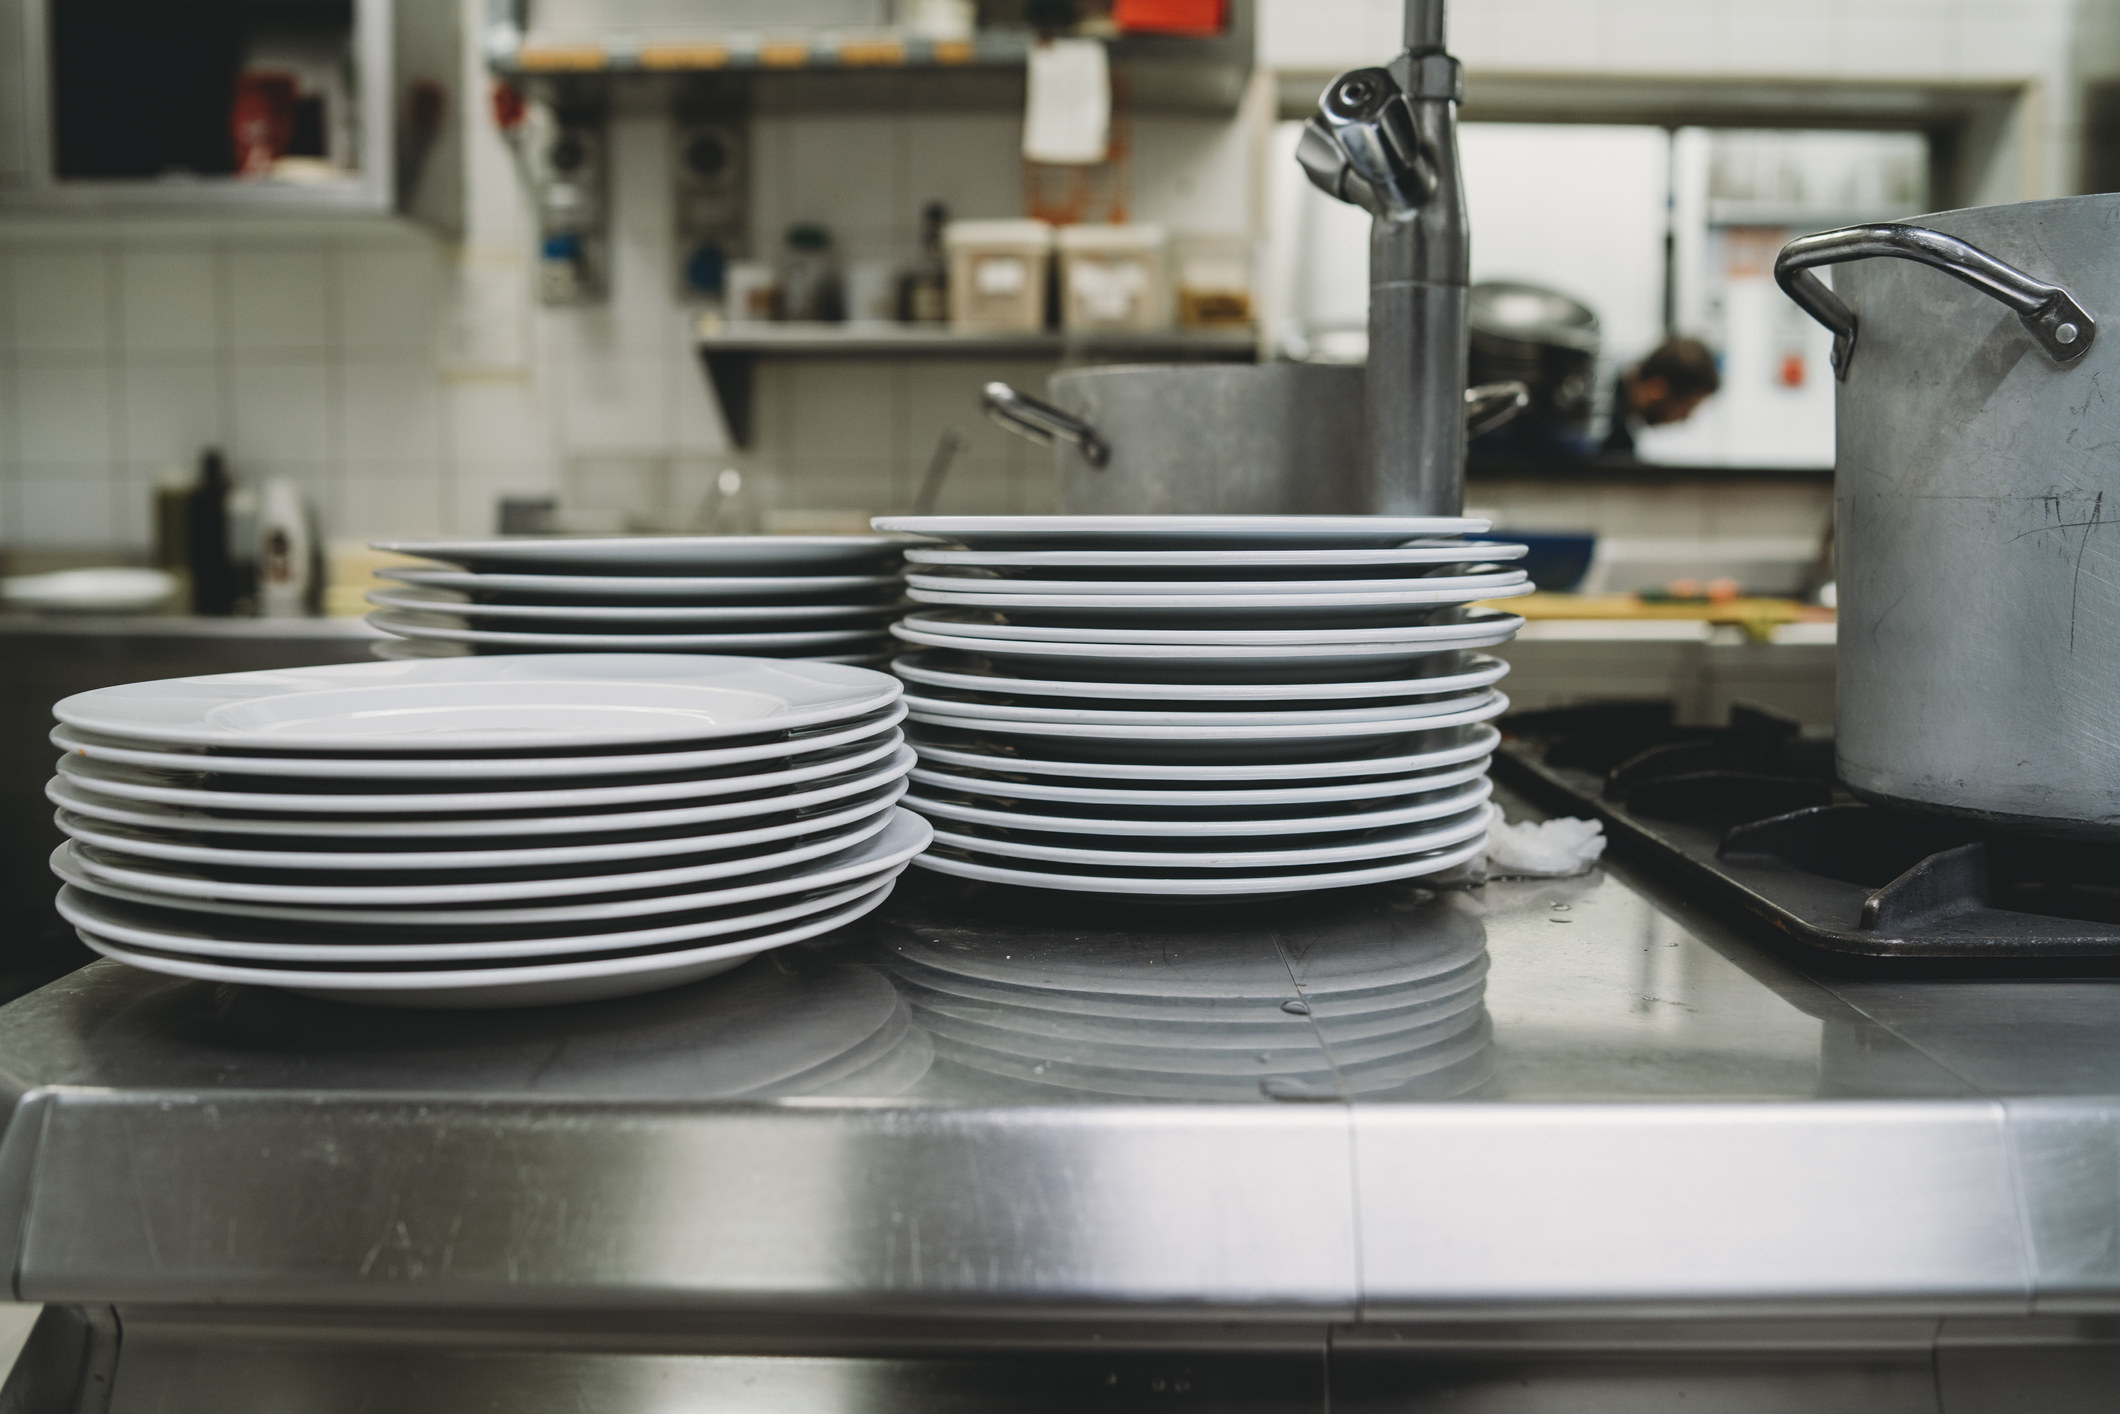 clean dishes in a restaurant kitchen